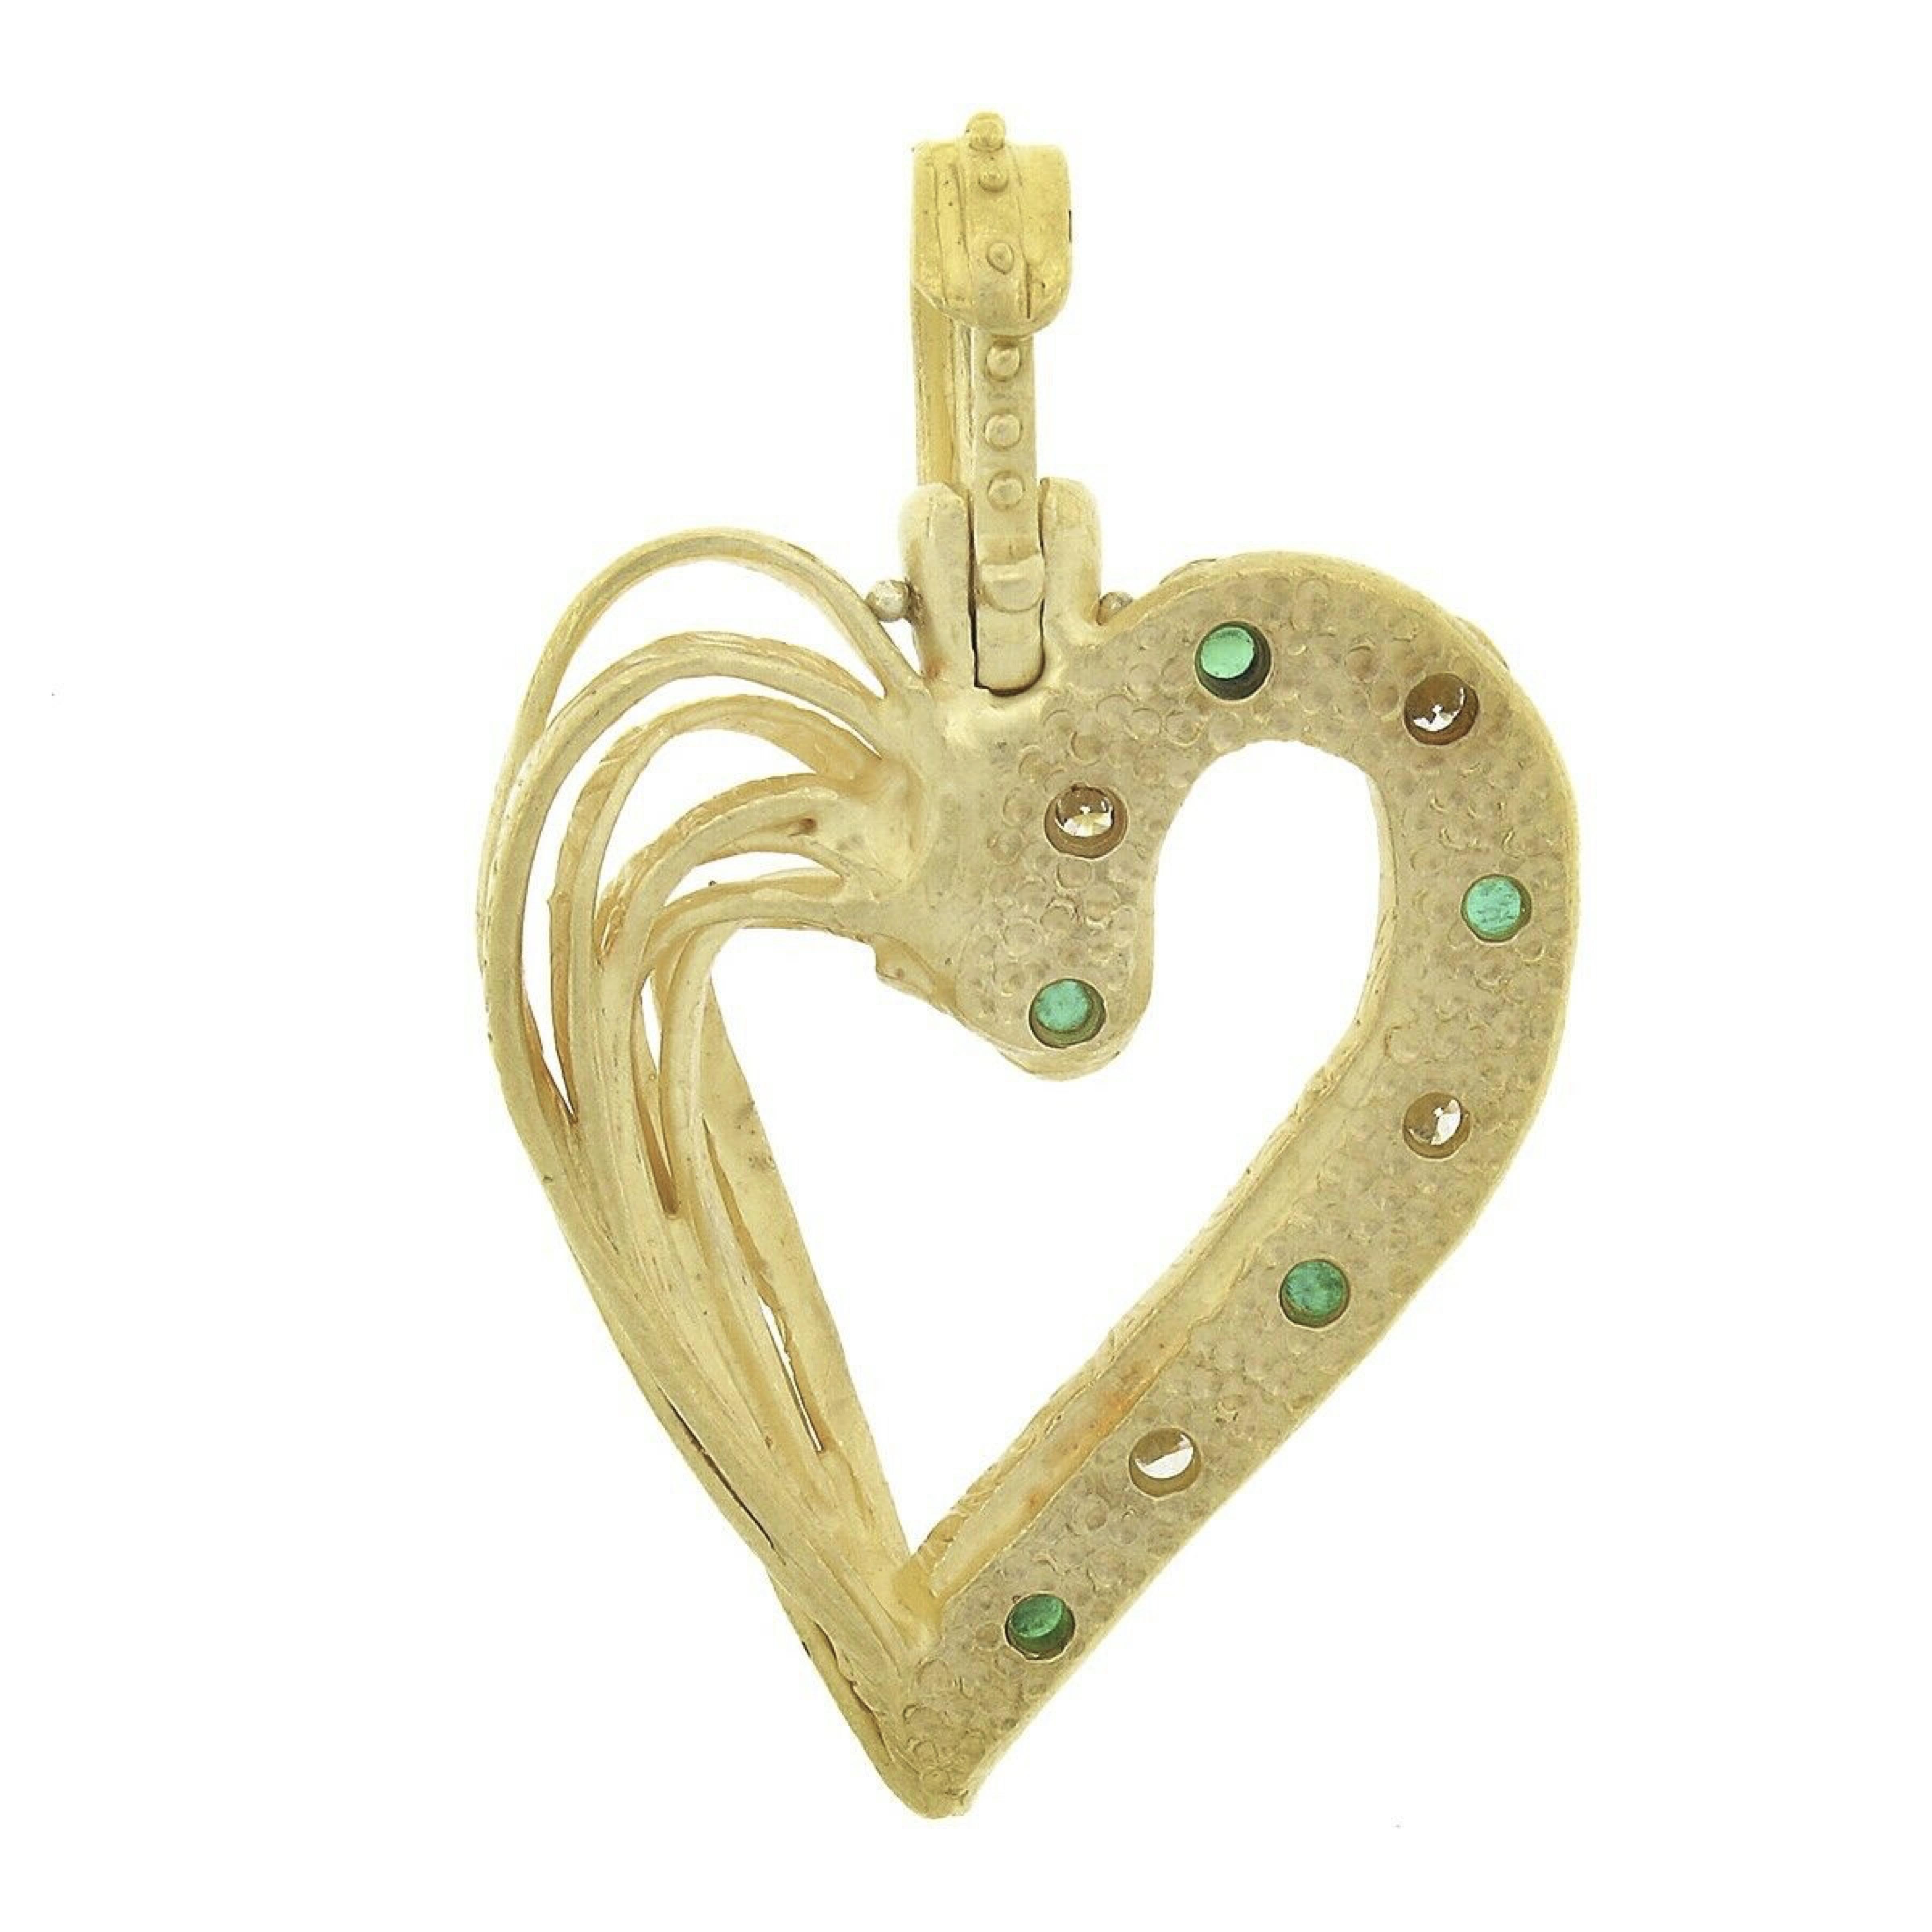 22k gold heart pendant